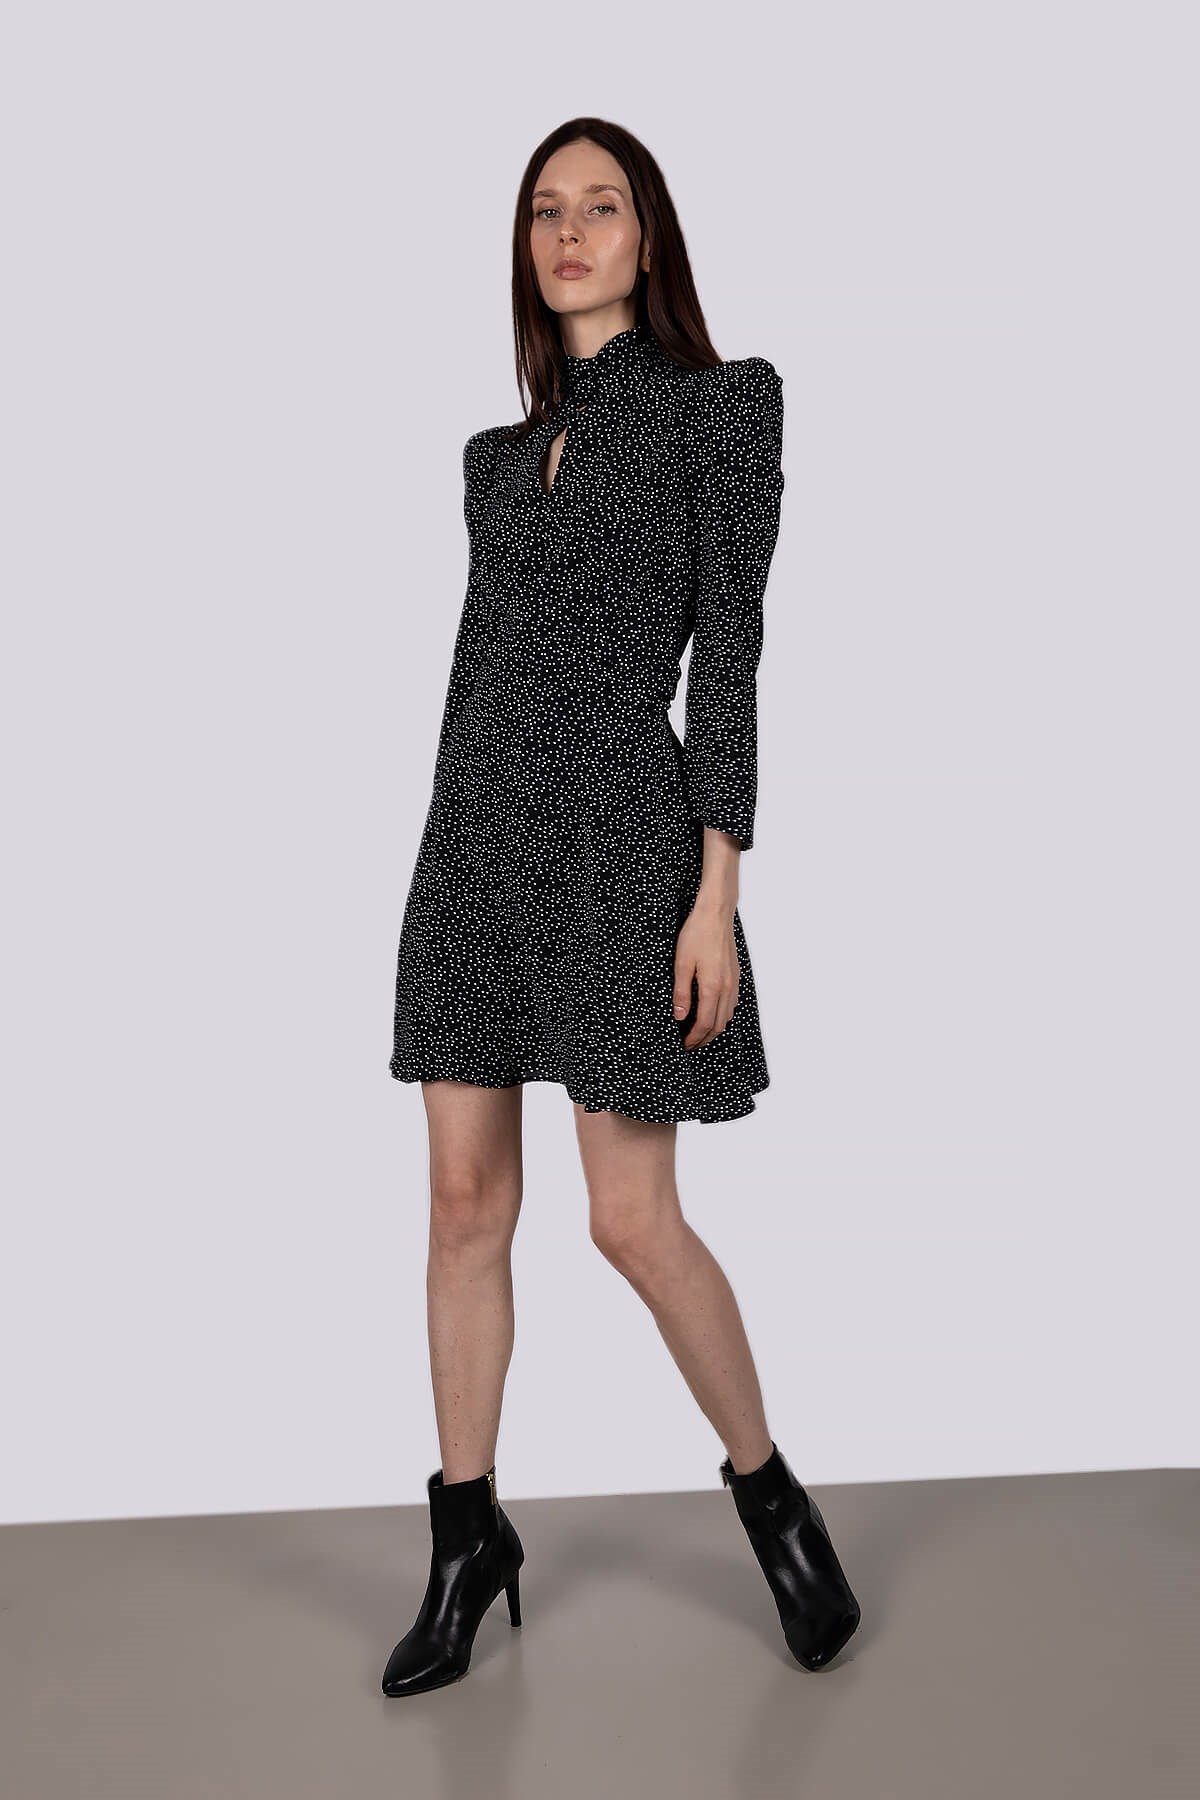 Siyah beyaz puantiyeli uzun kollu mini elbise şifon | NİLİST